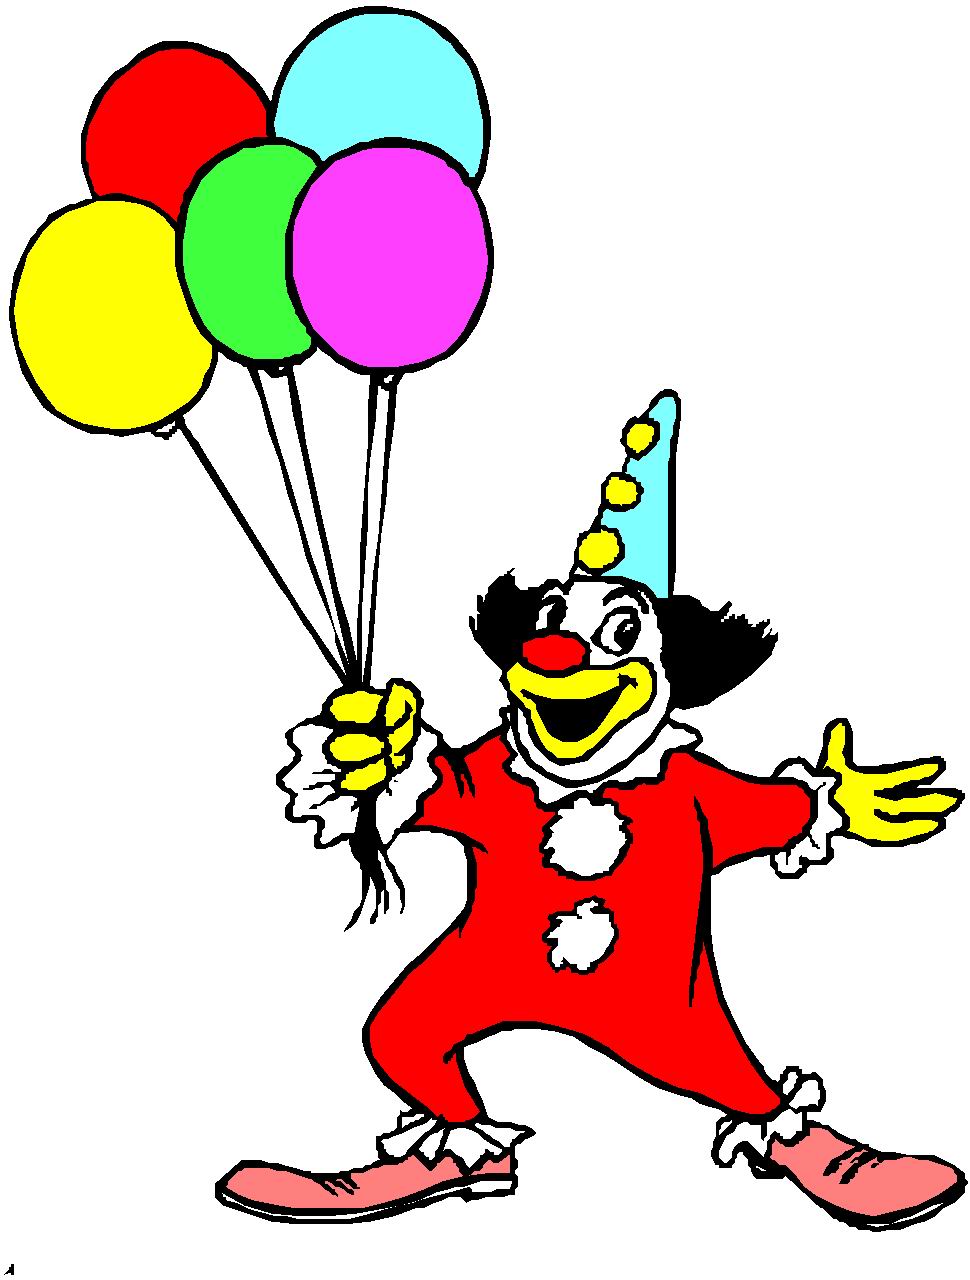 clowns: Happy clown art-illus